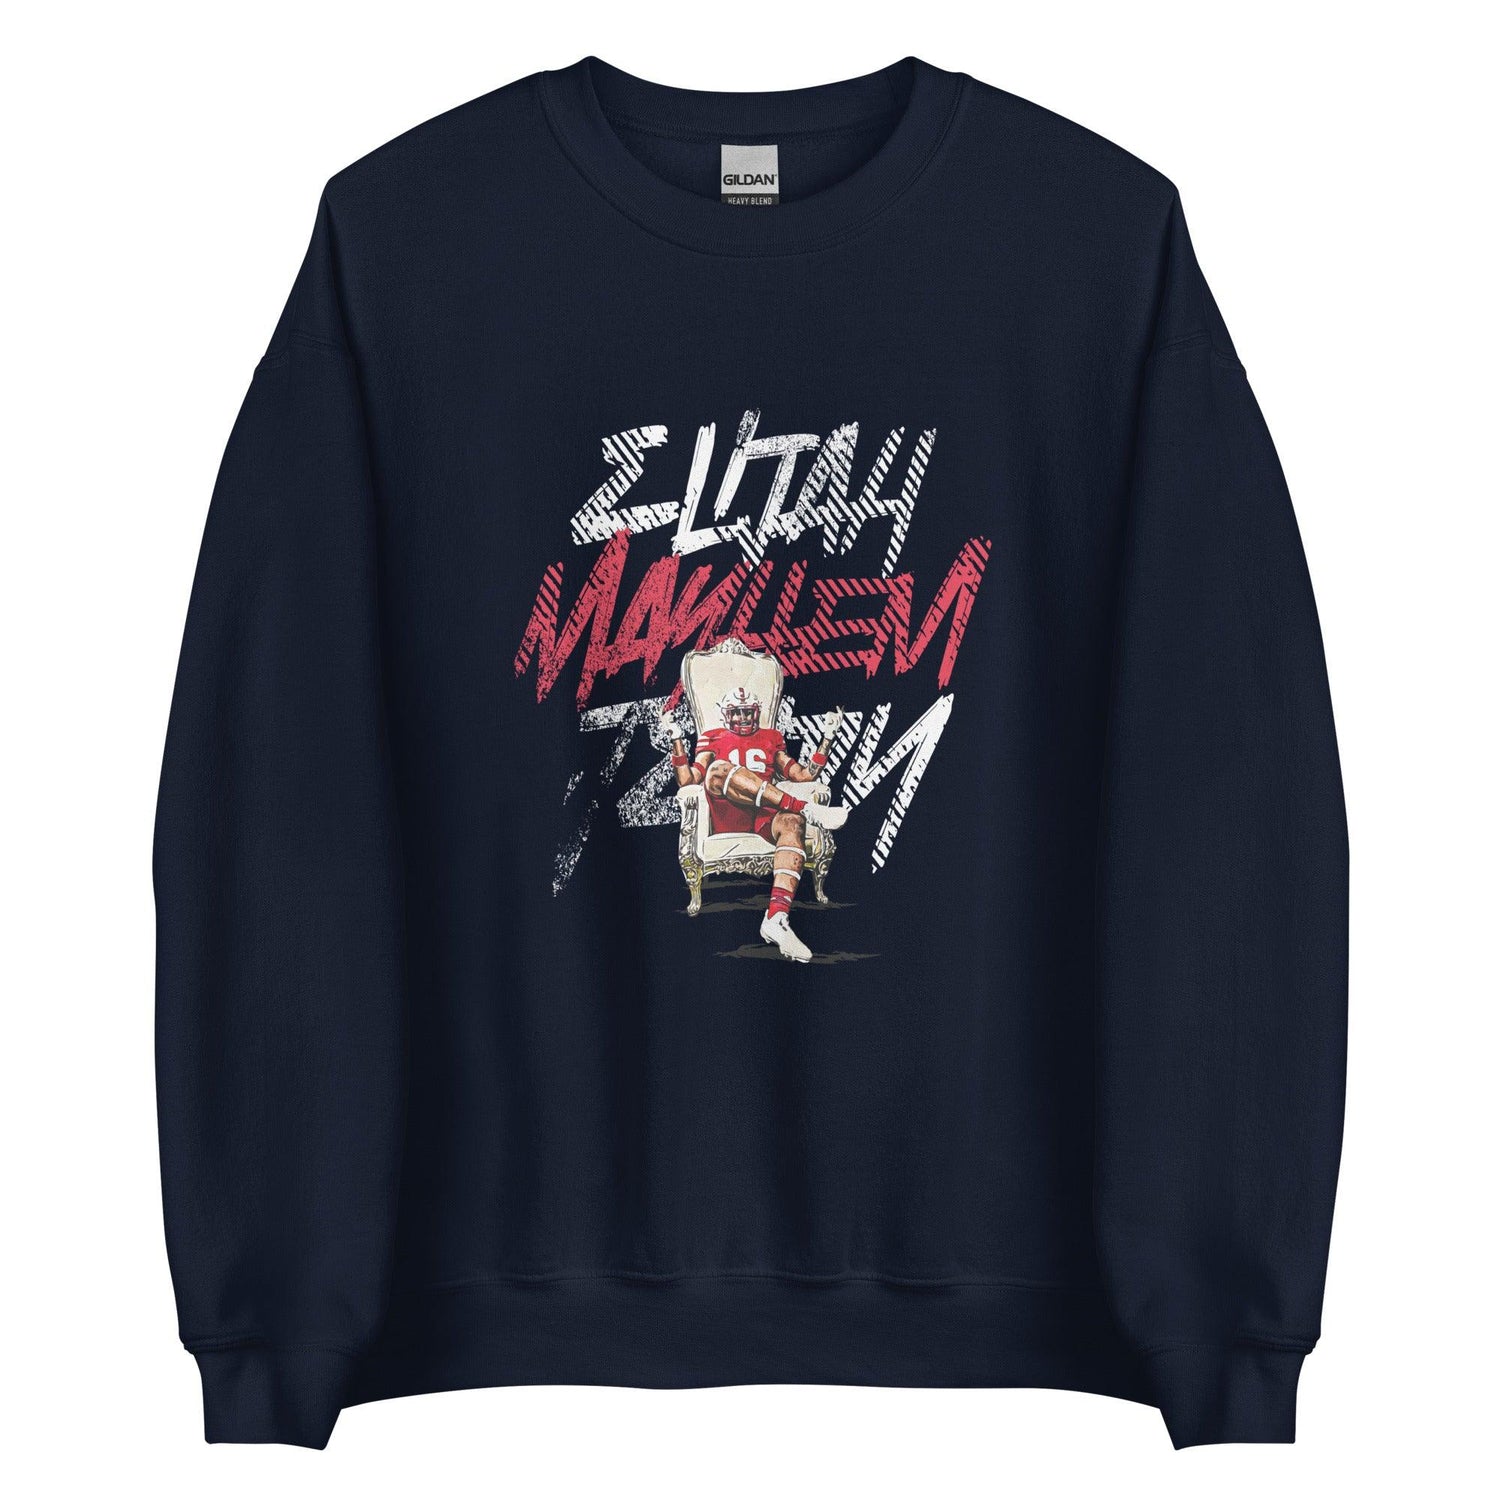 Elijah Jeudy "Gameday" Sweatshirt - Fan Arch